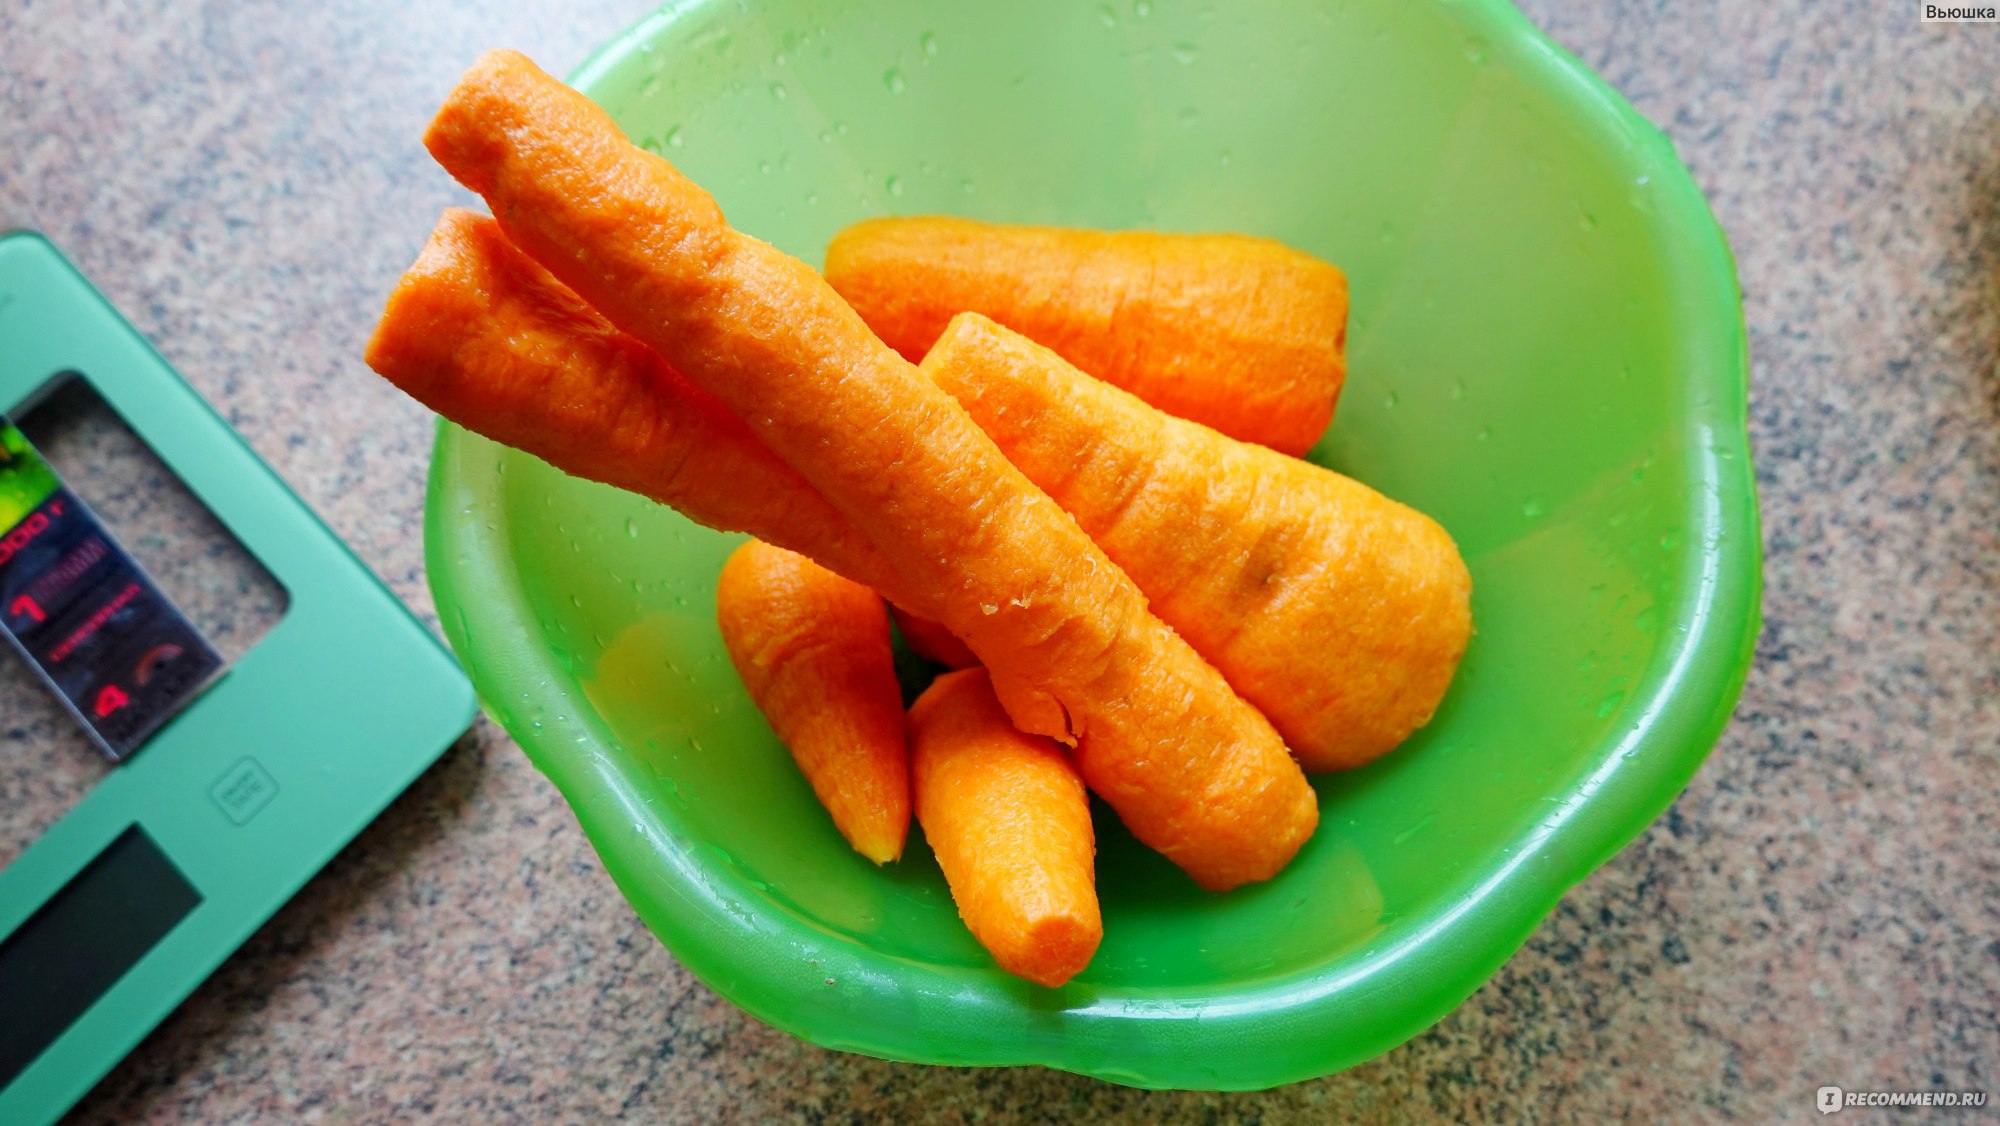 Корейская заправка ЧИМ-ЧИМ (Virtex Food) для моркови